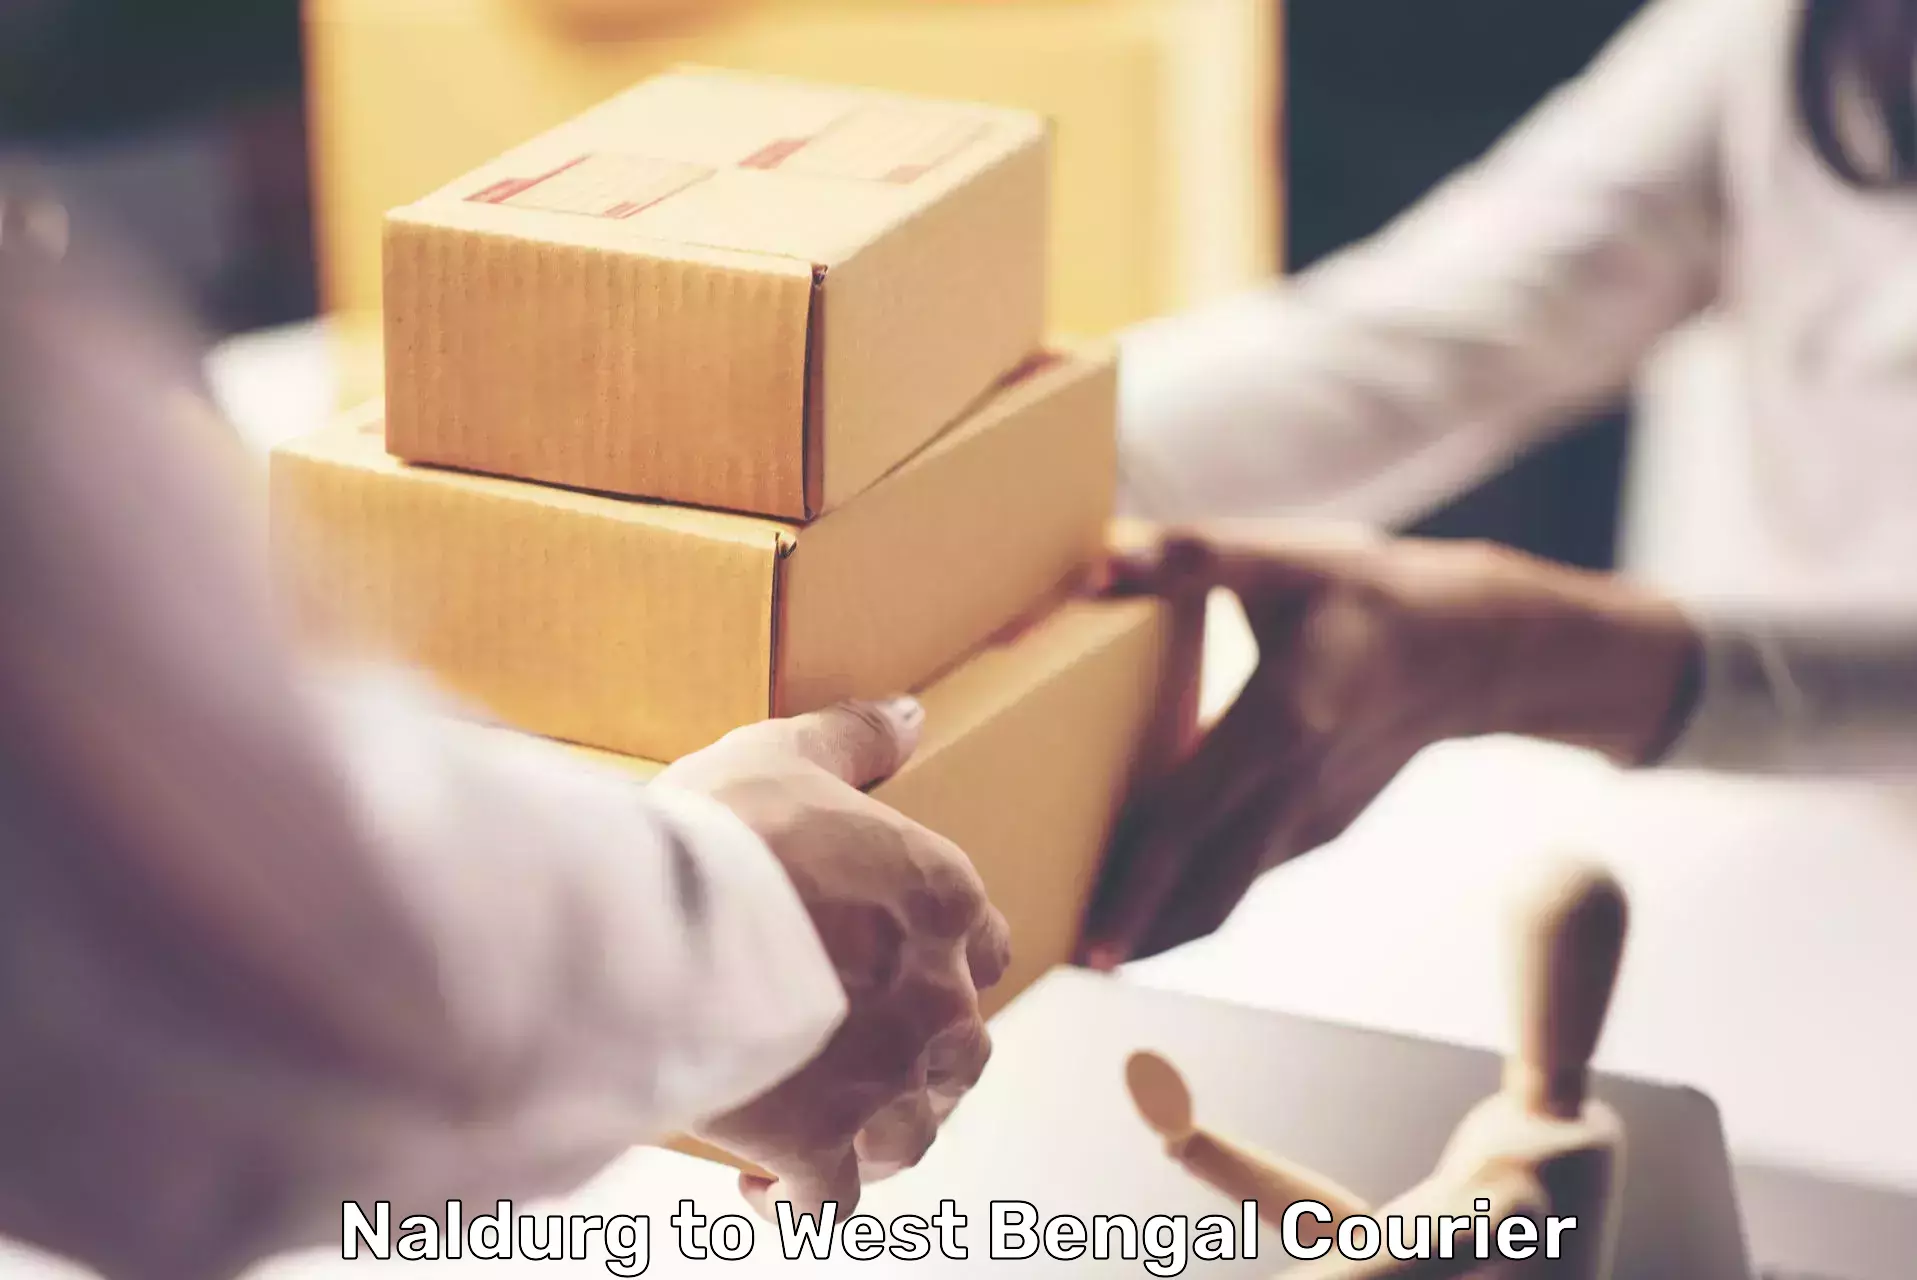 Speedy delivery service in Naldurg to Alipore